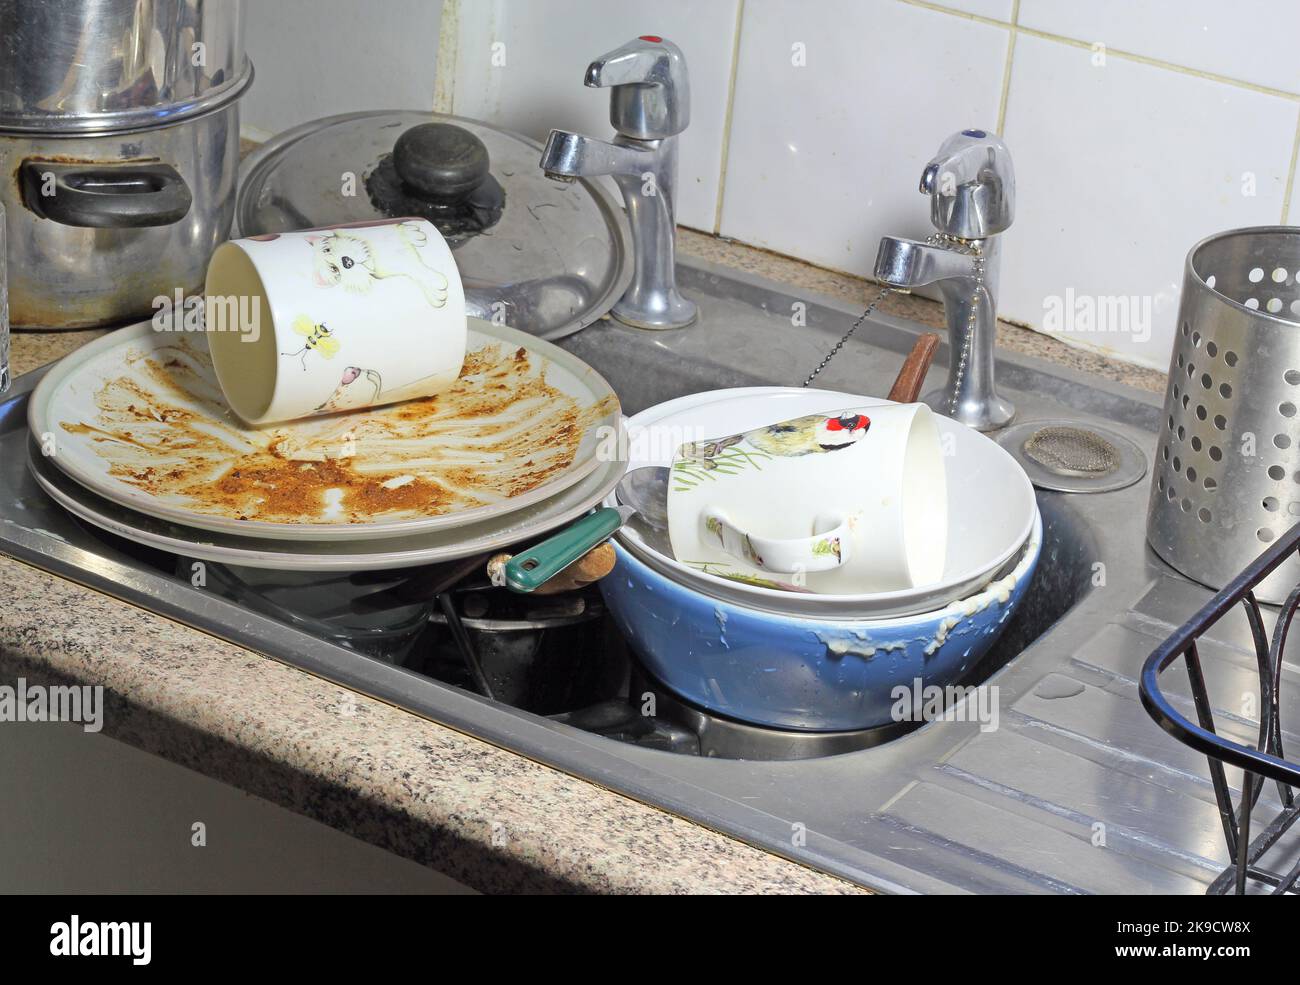 Stoviglie sporche, incluse tazze e piatti in un lavandino, in attesa di essere pulite o lavate. Foto Stock